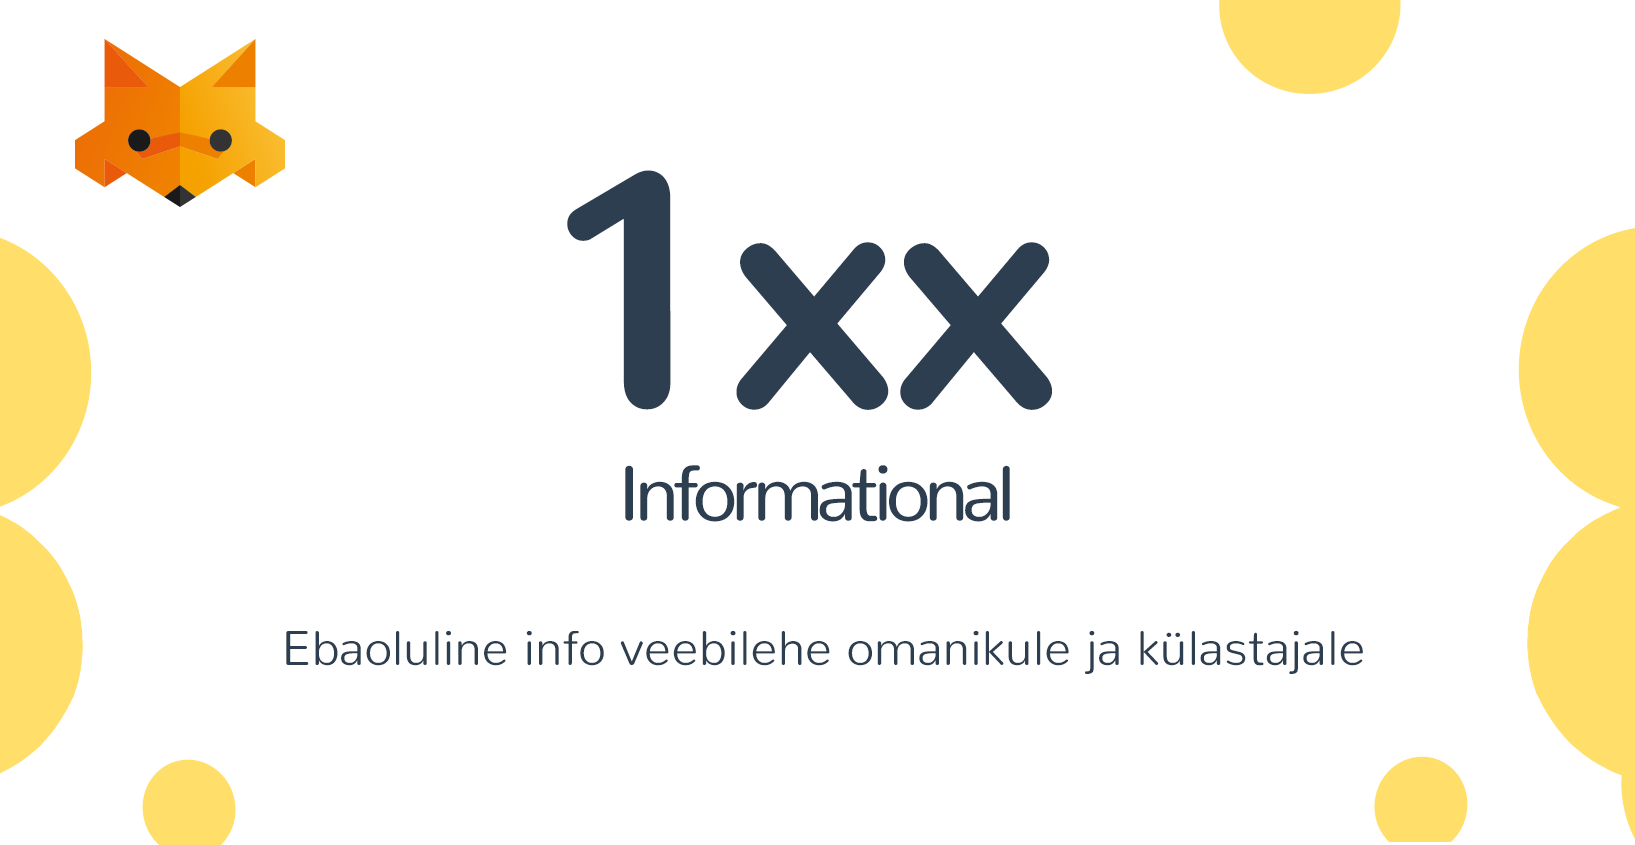 1xx Informational